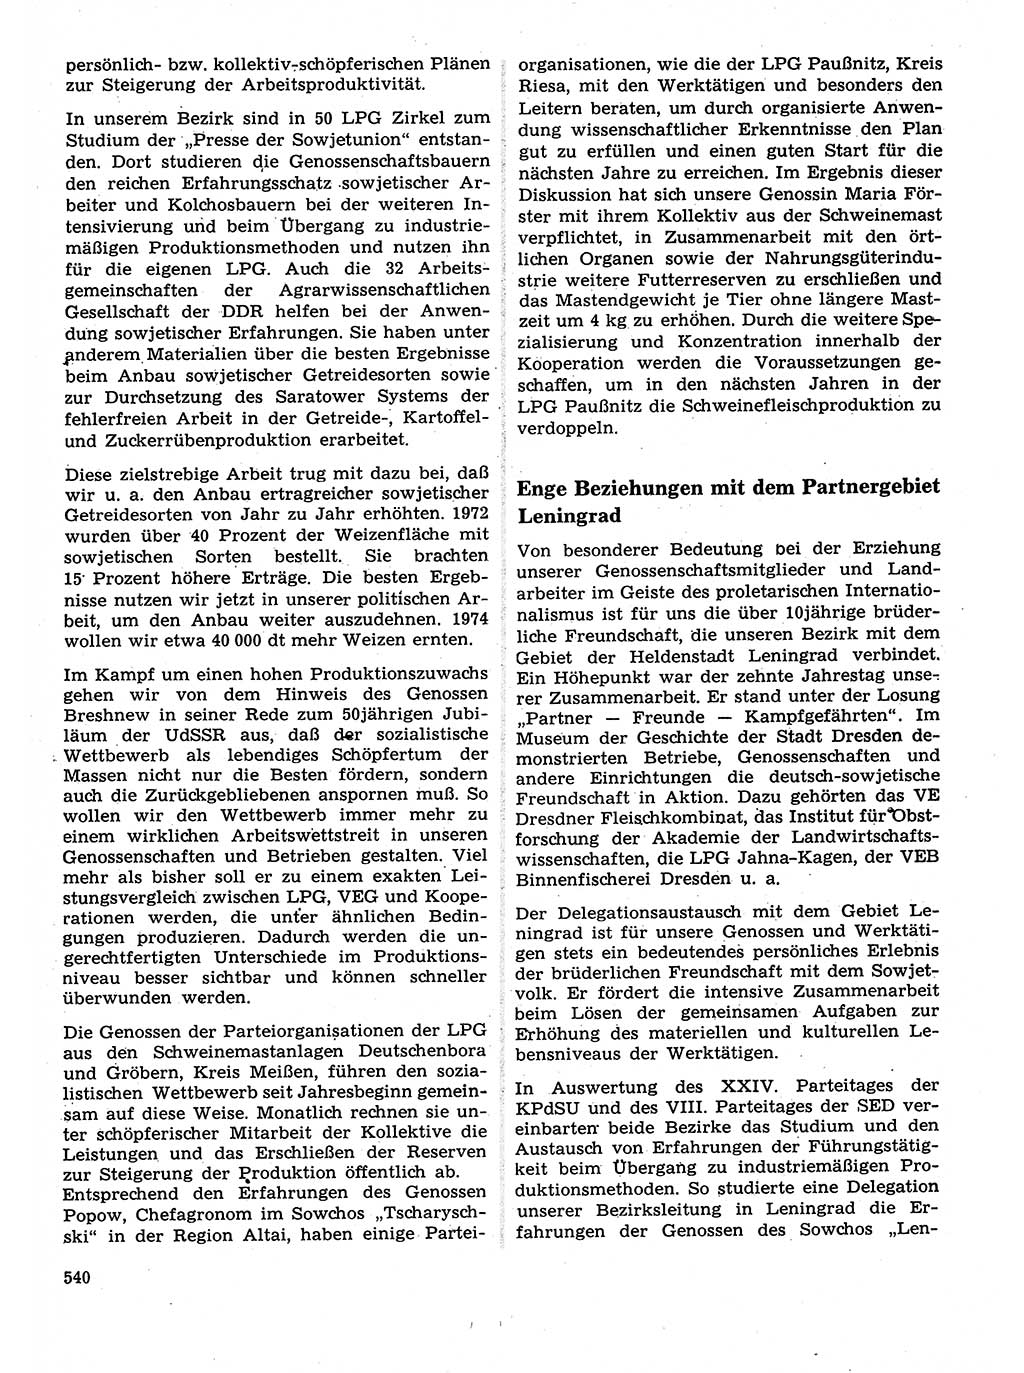 Neuer Weg (NW), Organ des Zentralkomitees (ZK) der SED (Sozialistische Einheitspartei Deutschlands) für Fragen des Parteilebens, 28. Jahrgang [Deutsche Demokratische Republik (DDR)] 1973, Seite 540 (NW ZK SED DDR 1973, S. 540)